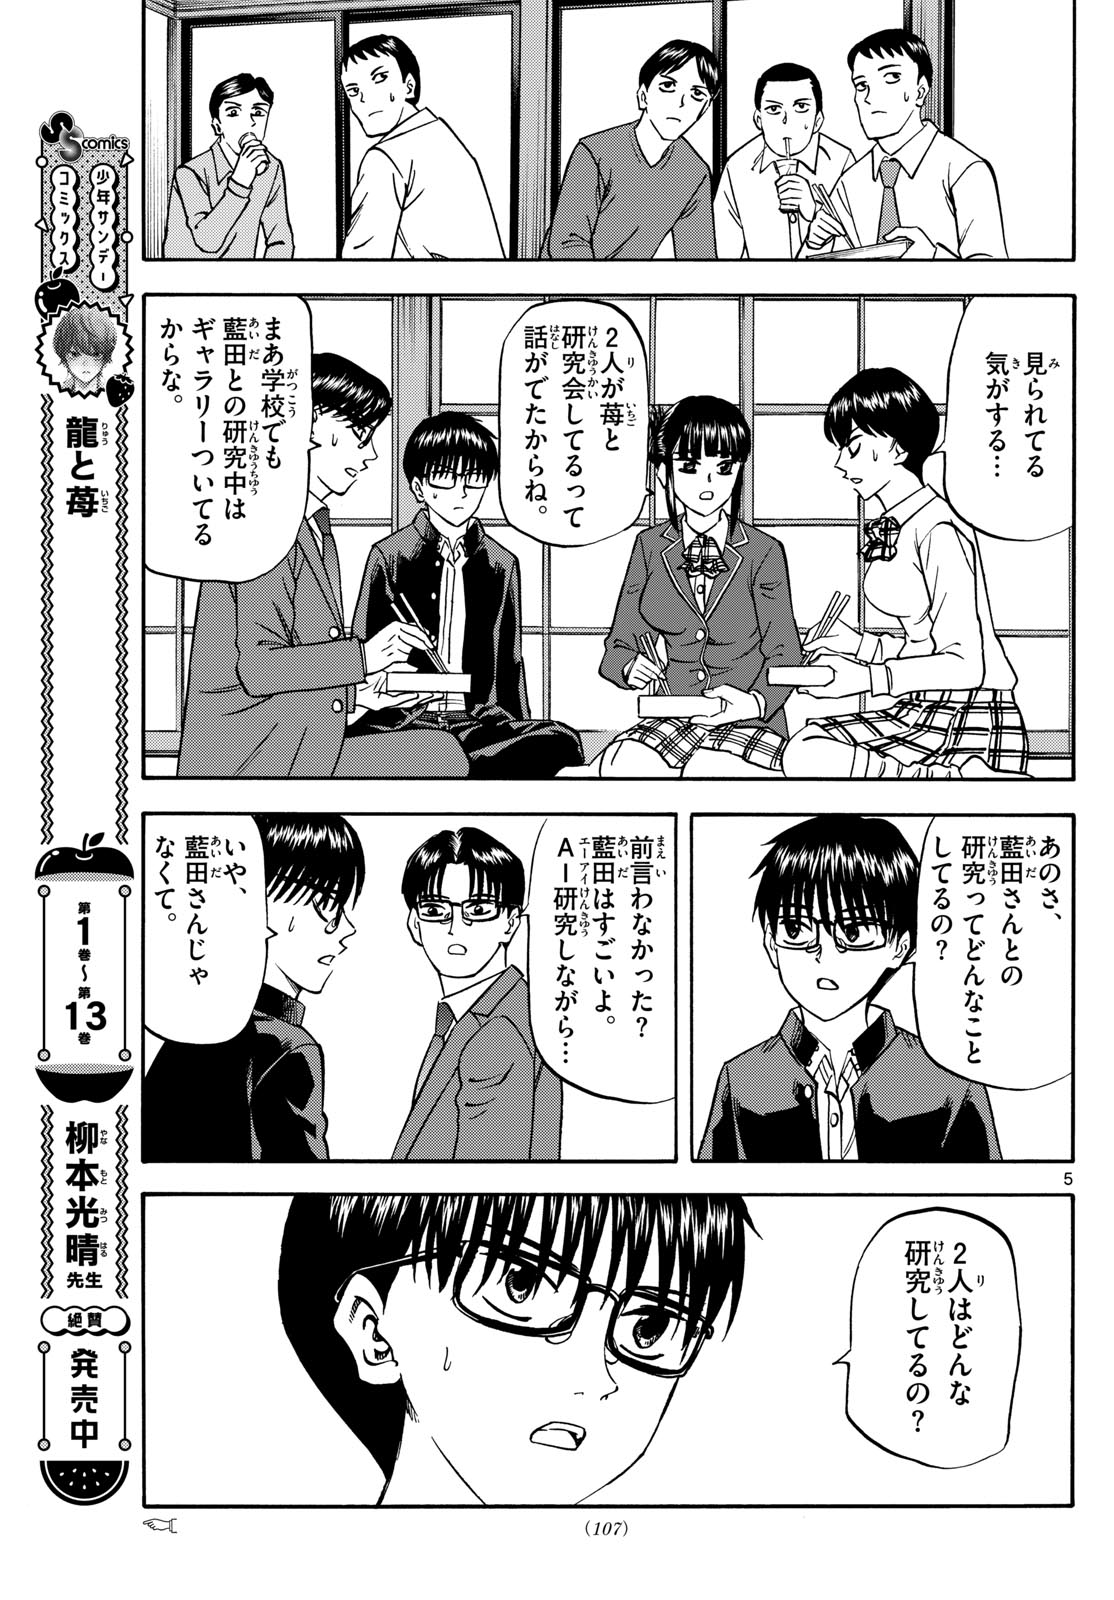 Tatsu to Ichigo - Chapter 172 - Page 5